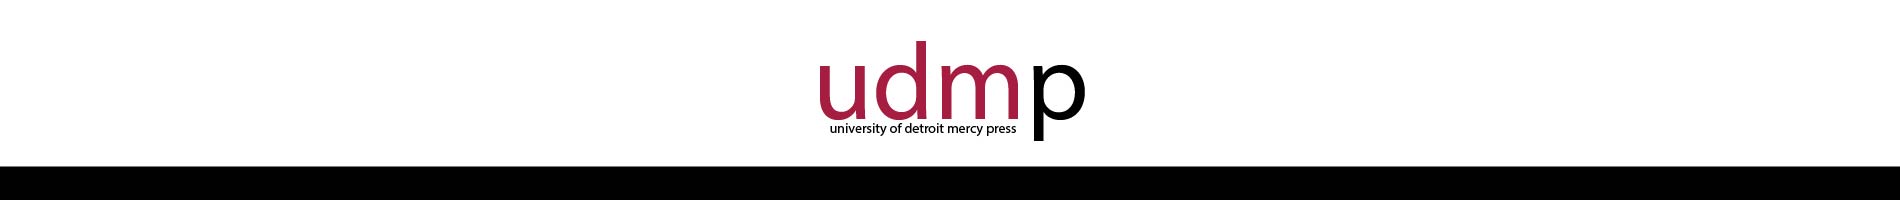 University of Detroit Mercy Press logo